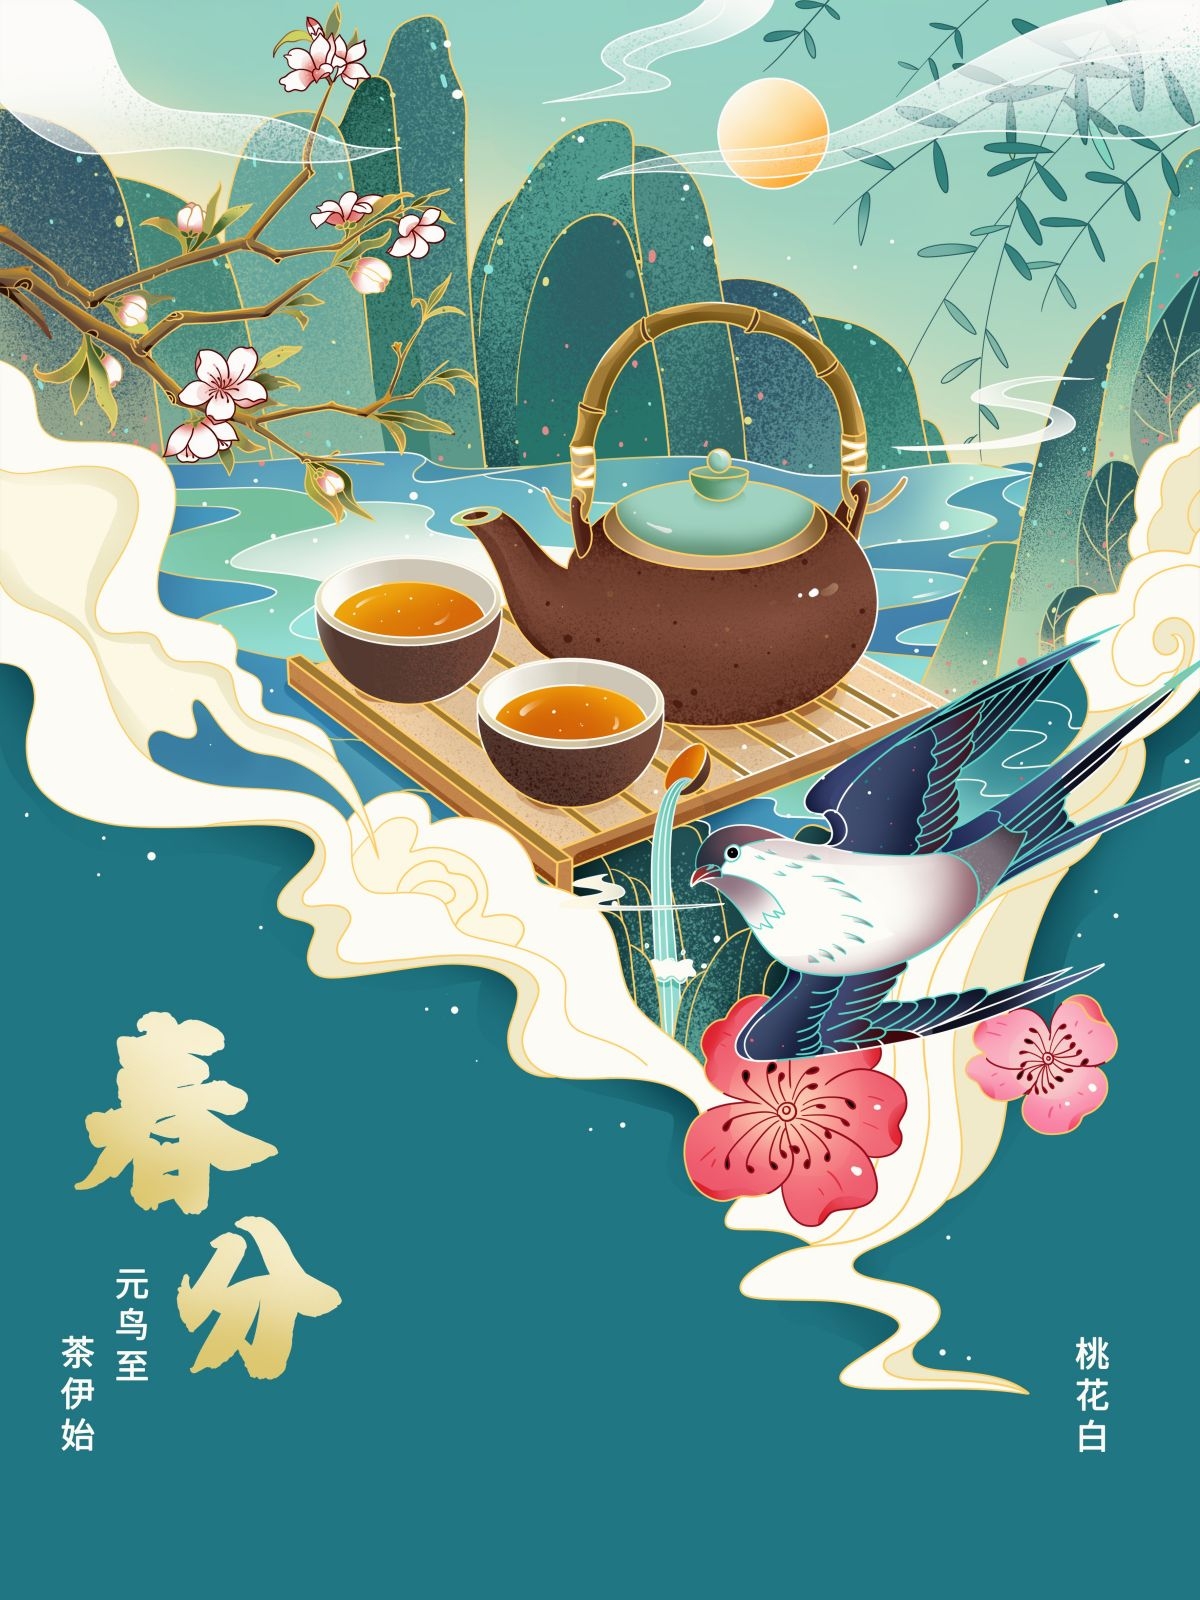 国潮风整套24二十四节气传统节日宣传手绘插画模板 (22)